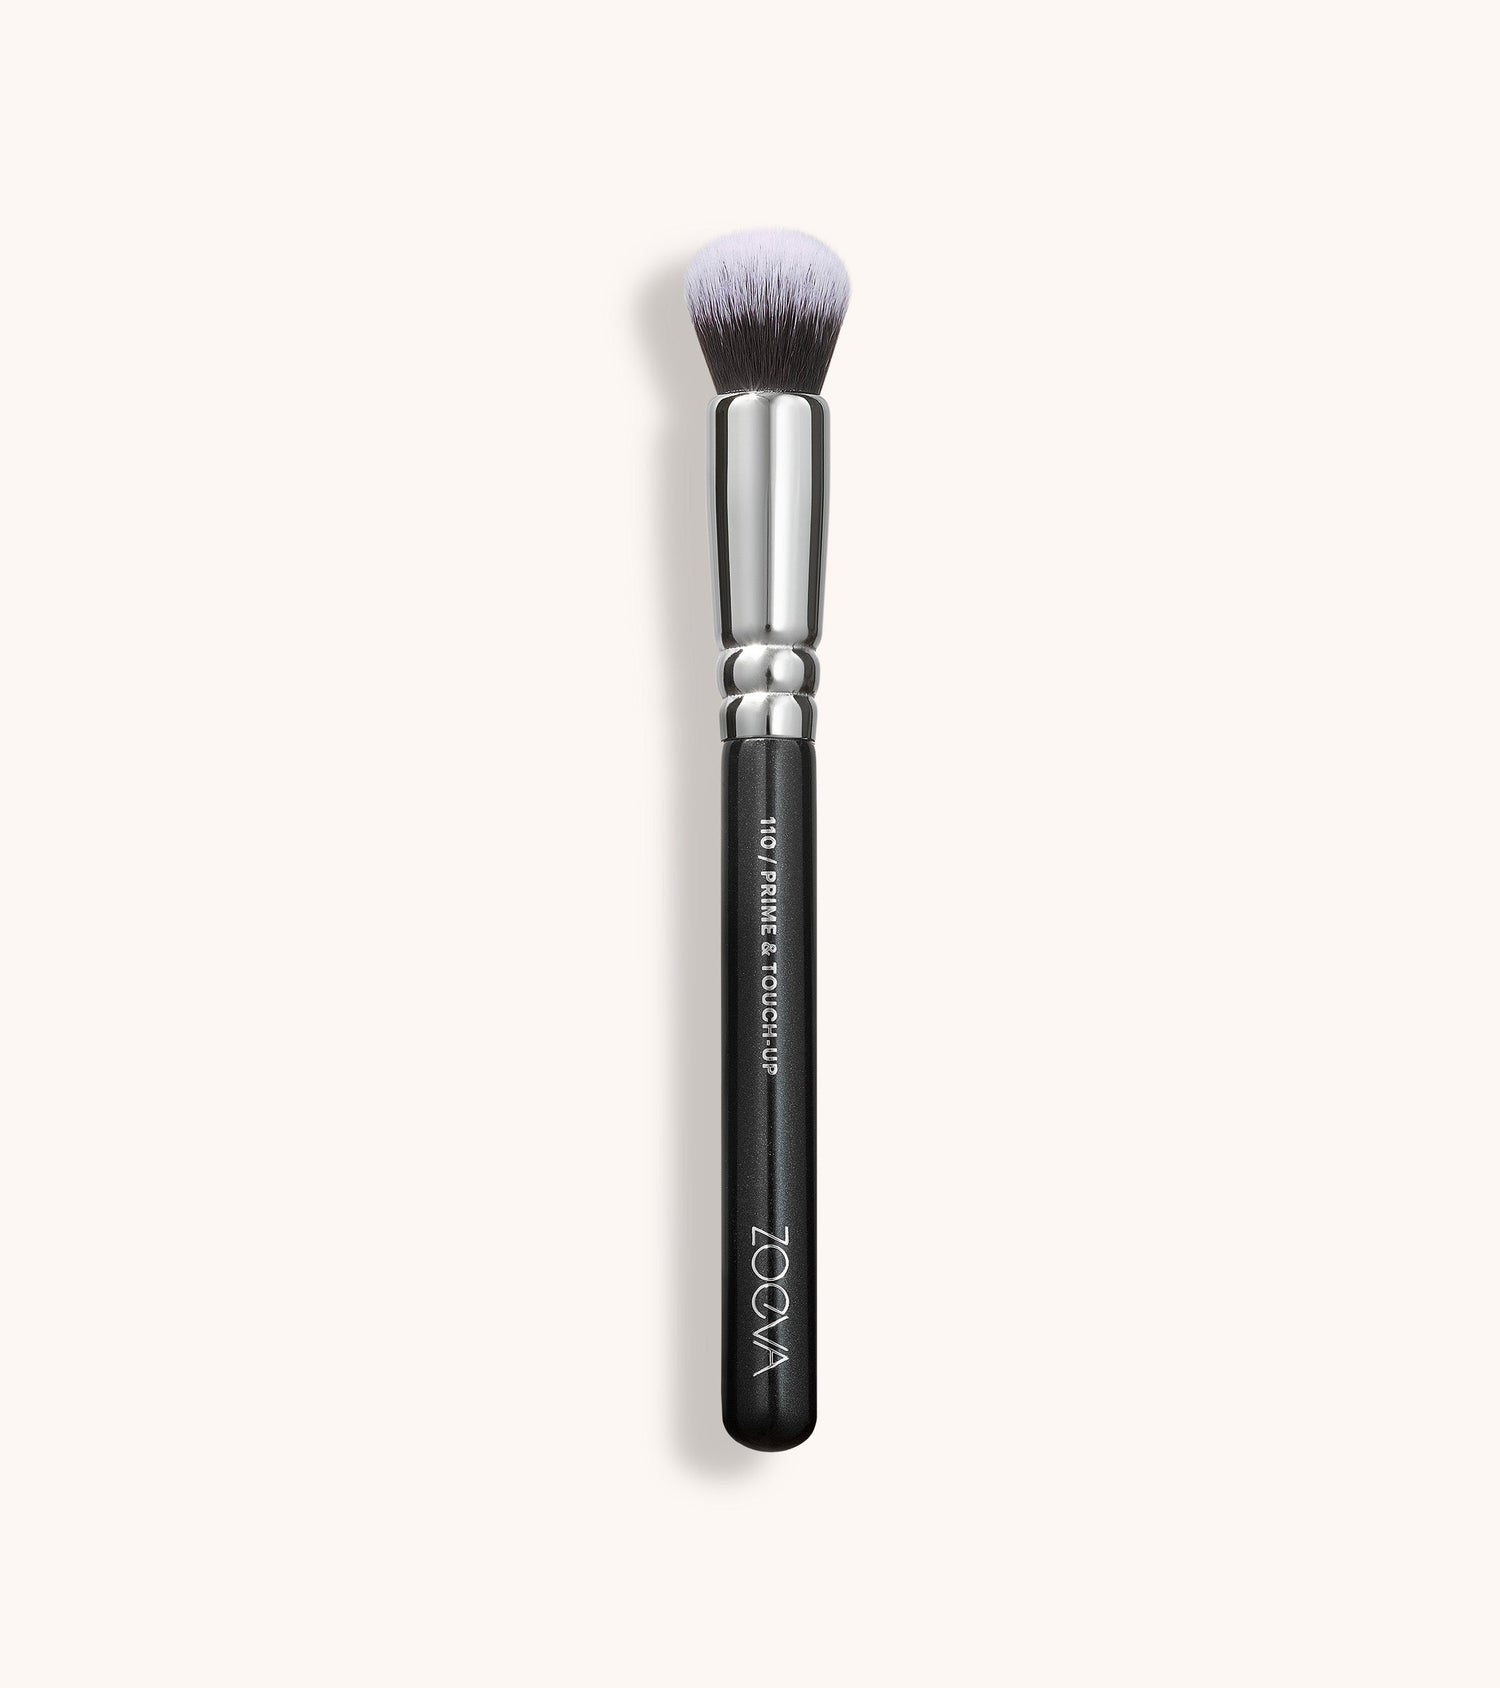 Double Duty Makeup Brush Kit – The Lip Bar